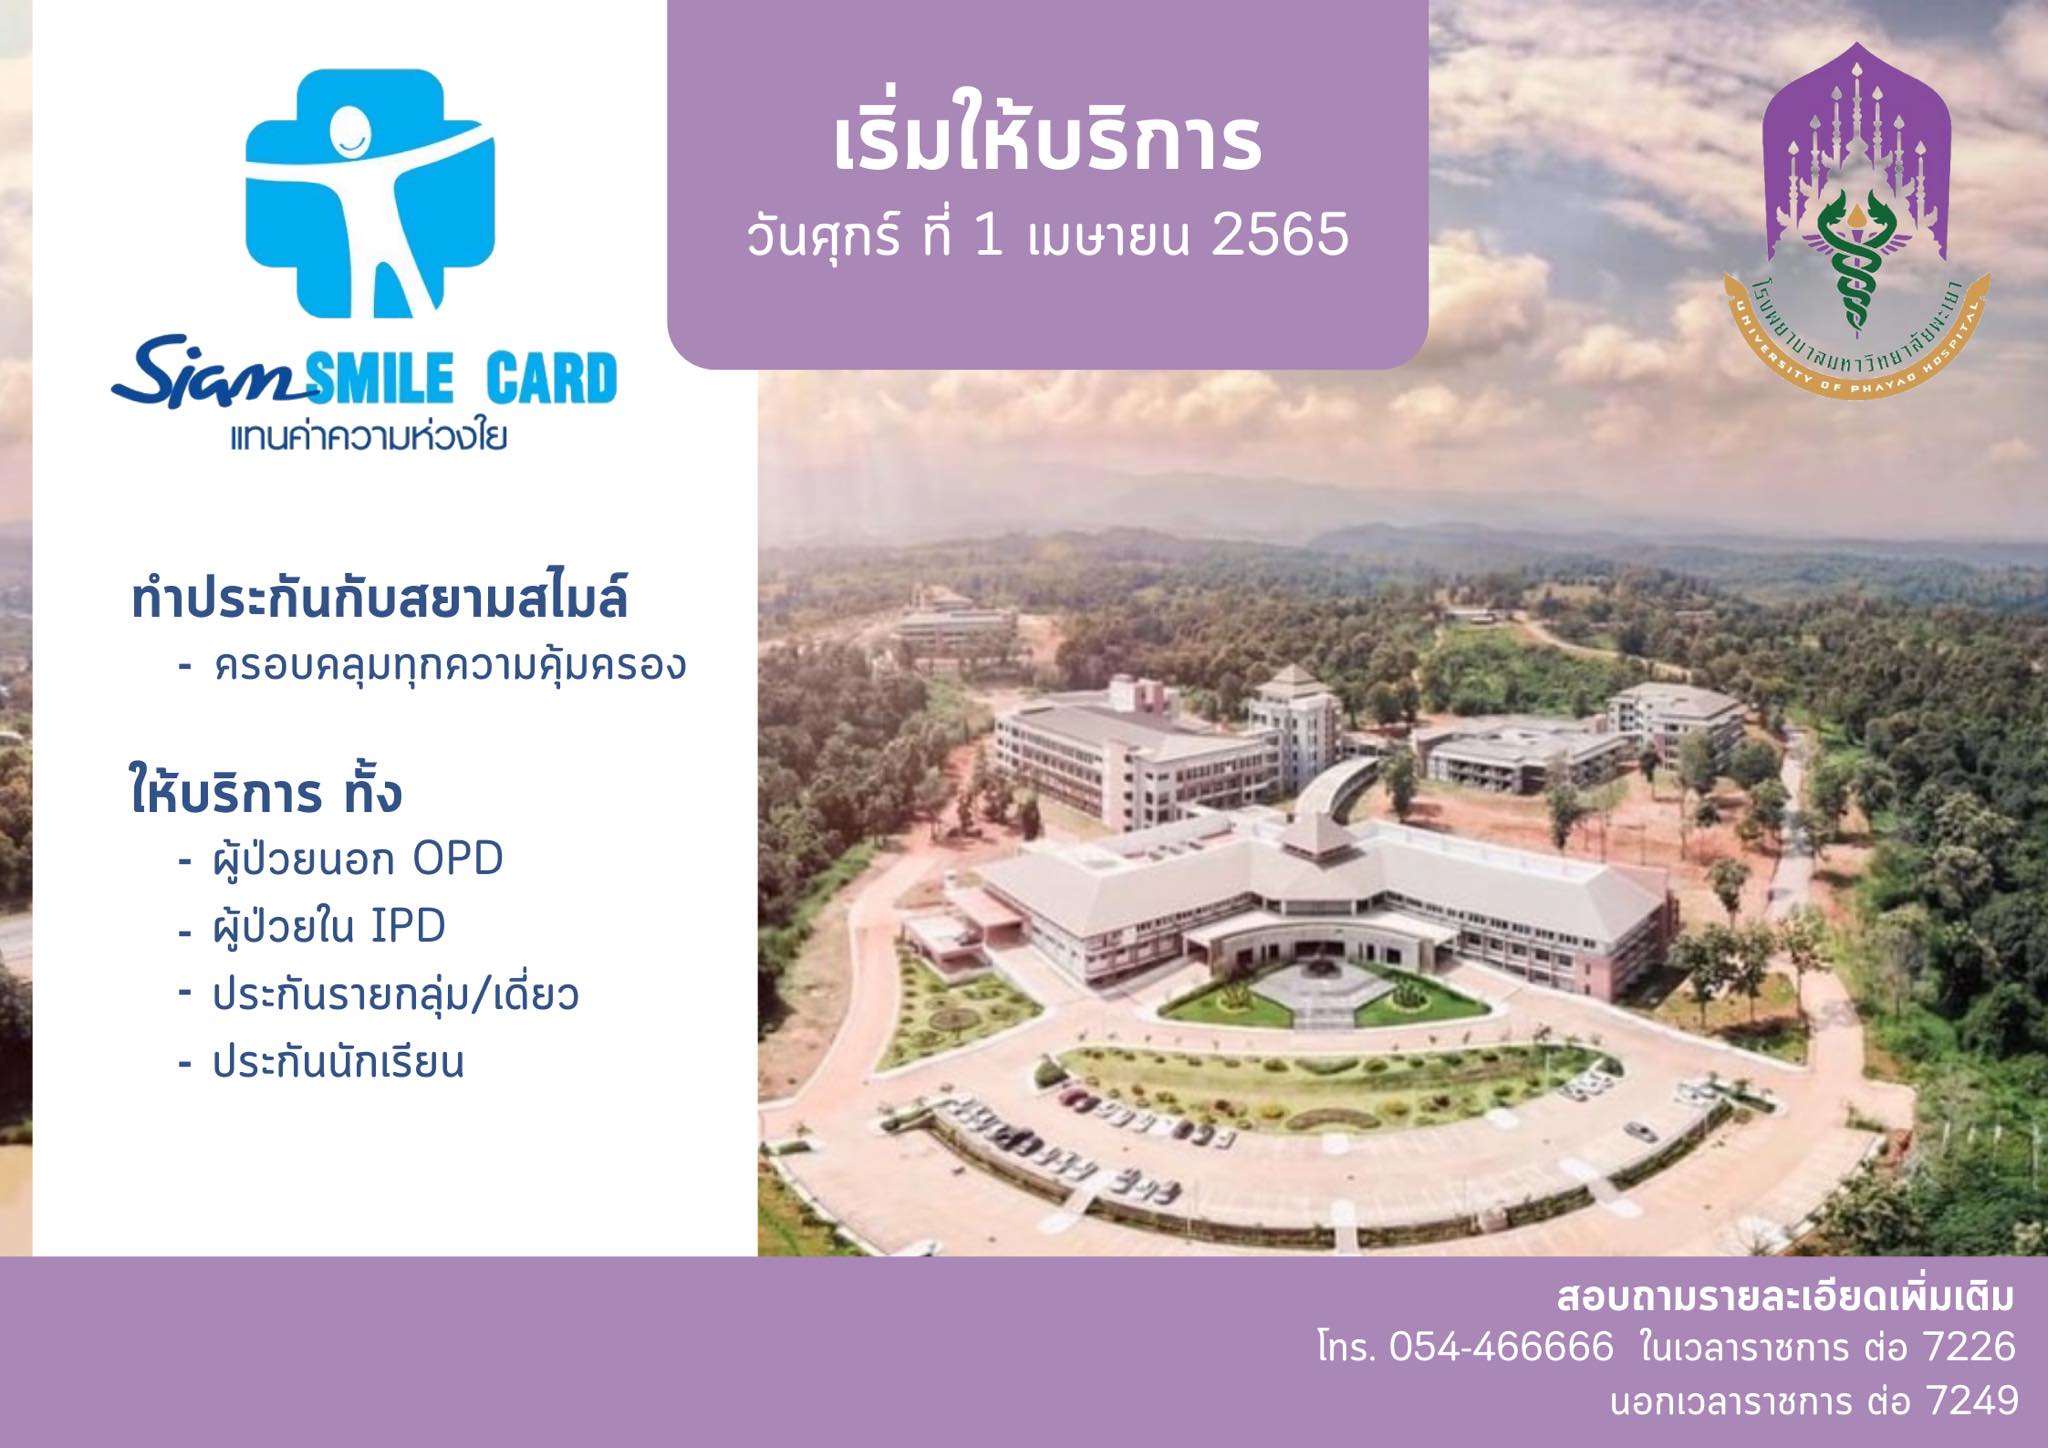 โรงพยาบาลมหาวิทยลัยพะเยา เปิดให้บริการผู้ถือบัตรประกัน Siam Smile Card ครอบคลุมบริการตามชุดสิทธิประโยชน์ ได้ตั้งแต่วันที่ 1 เมษายน 2565